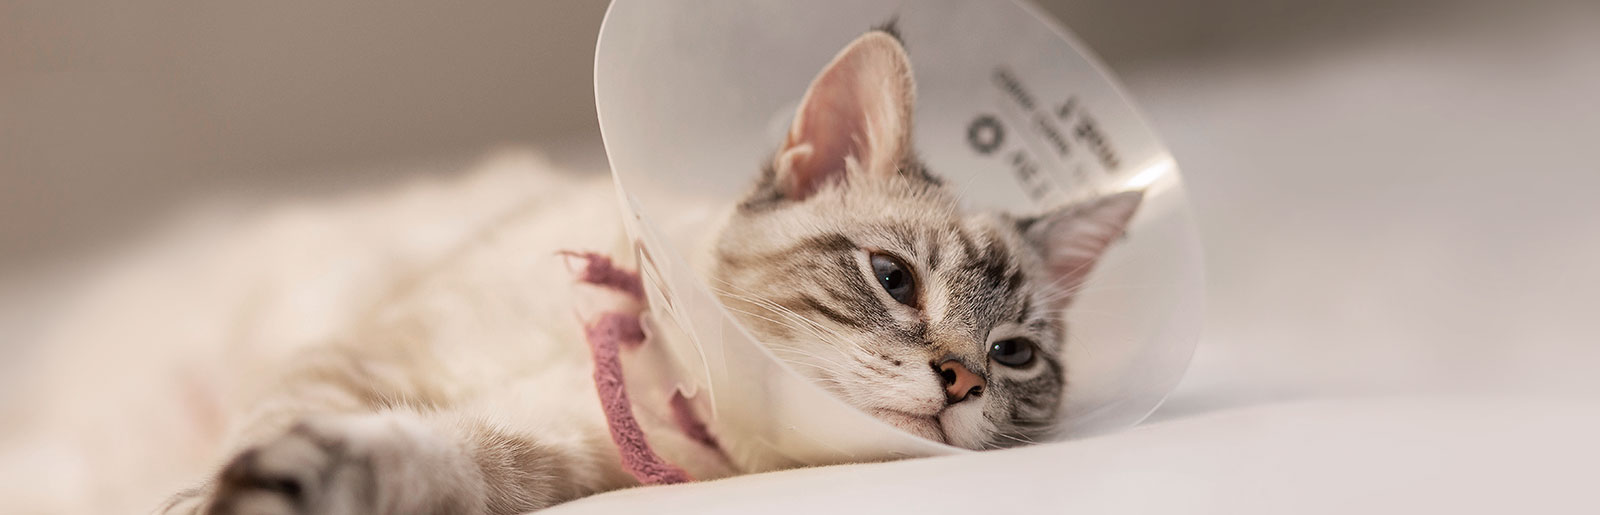 Juckreiz und Ausschlag können Symptome einer Hauterkrankung bei Katzen sein